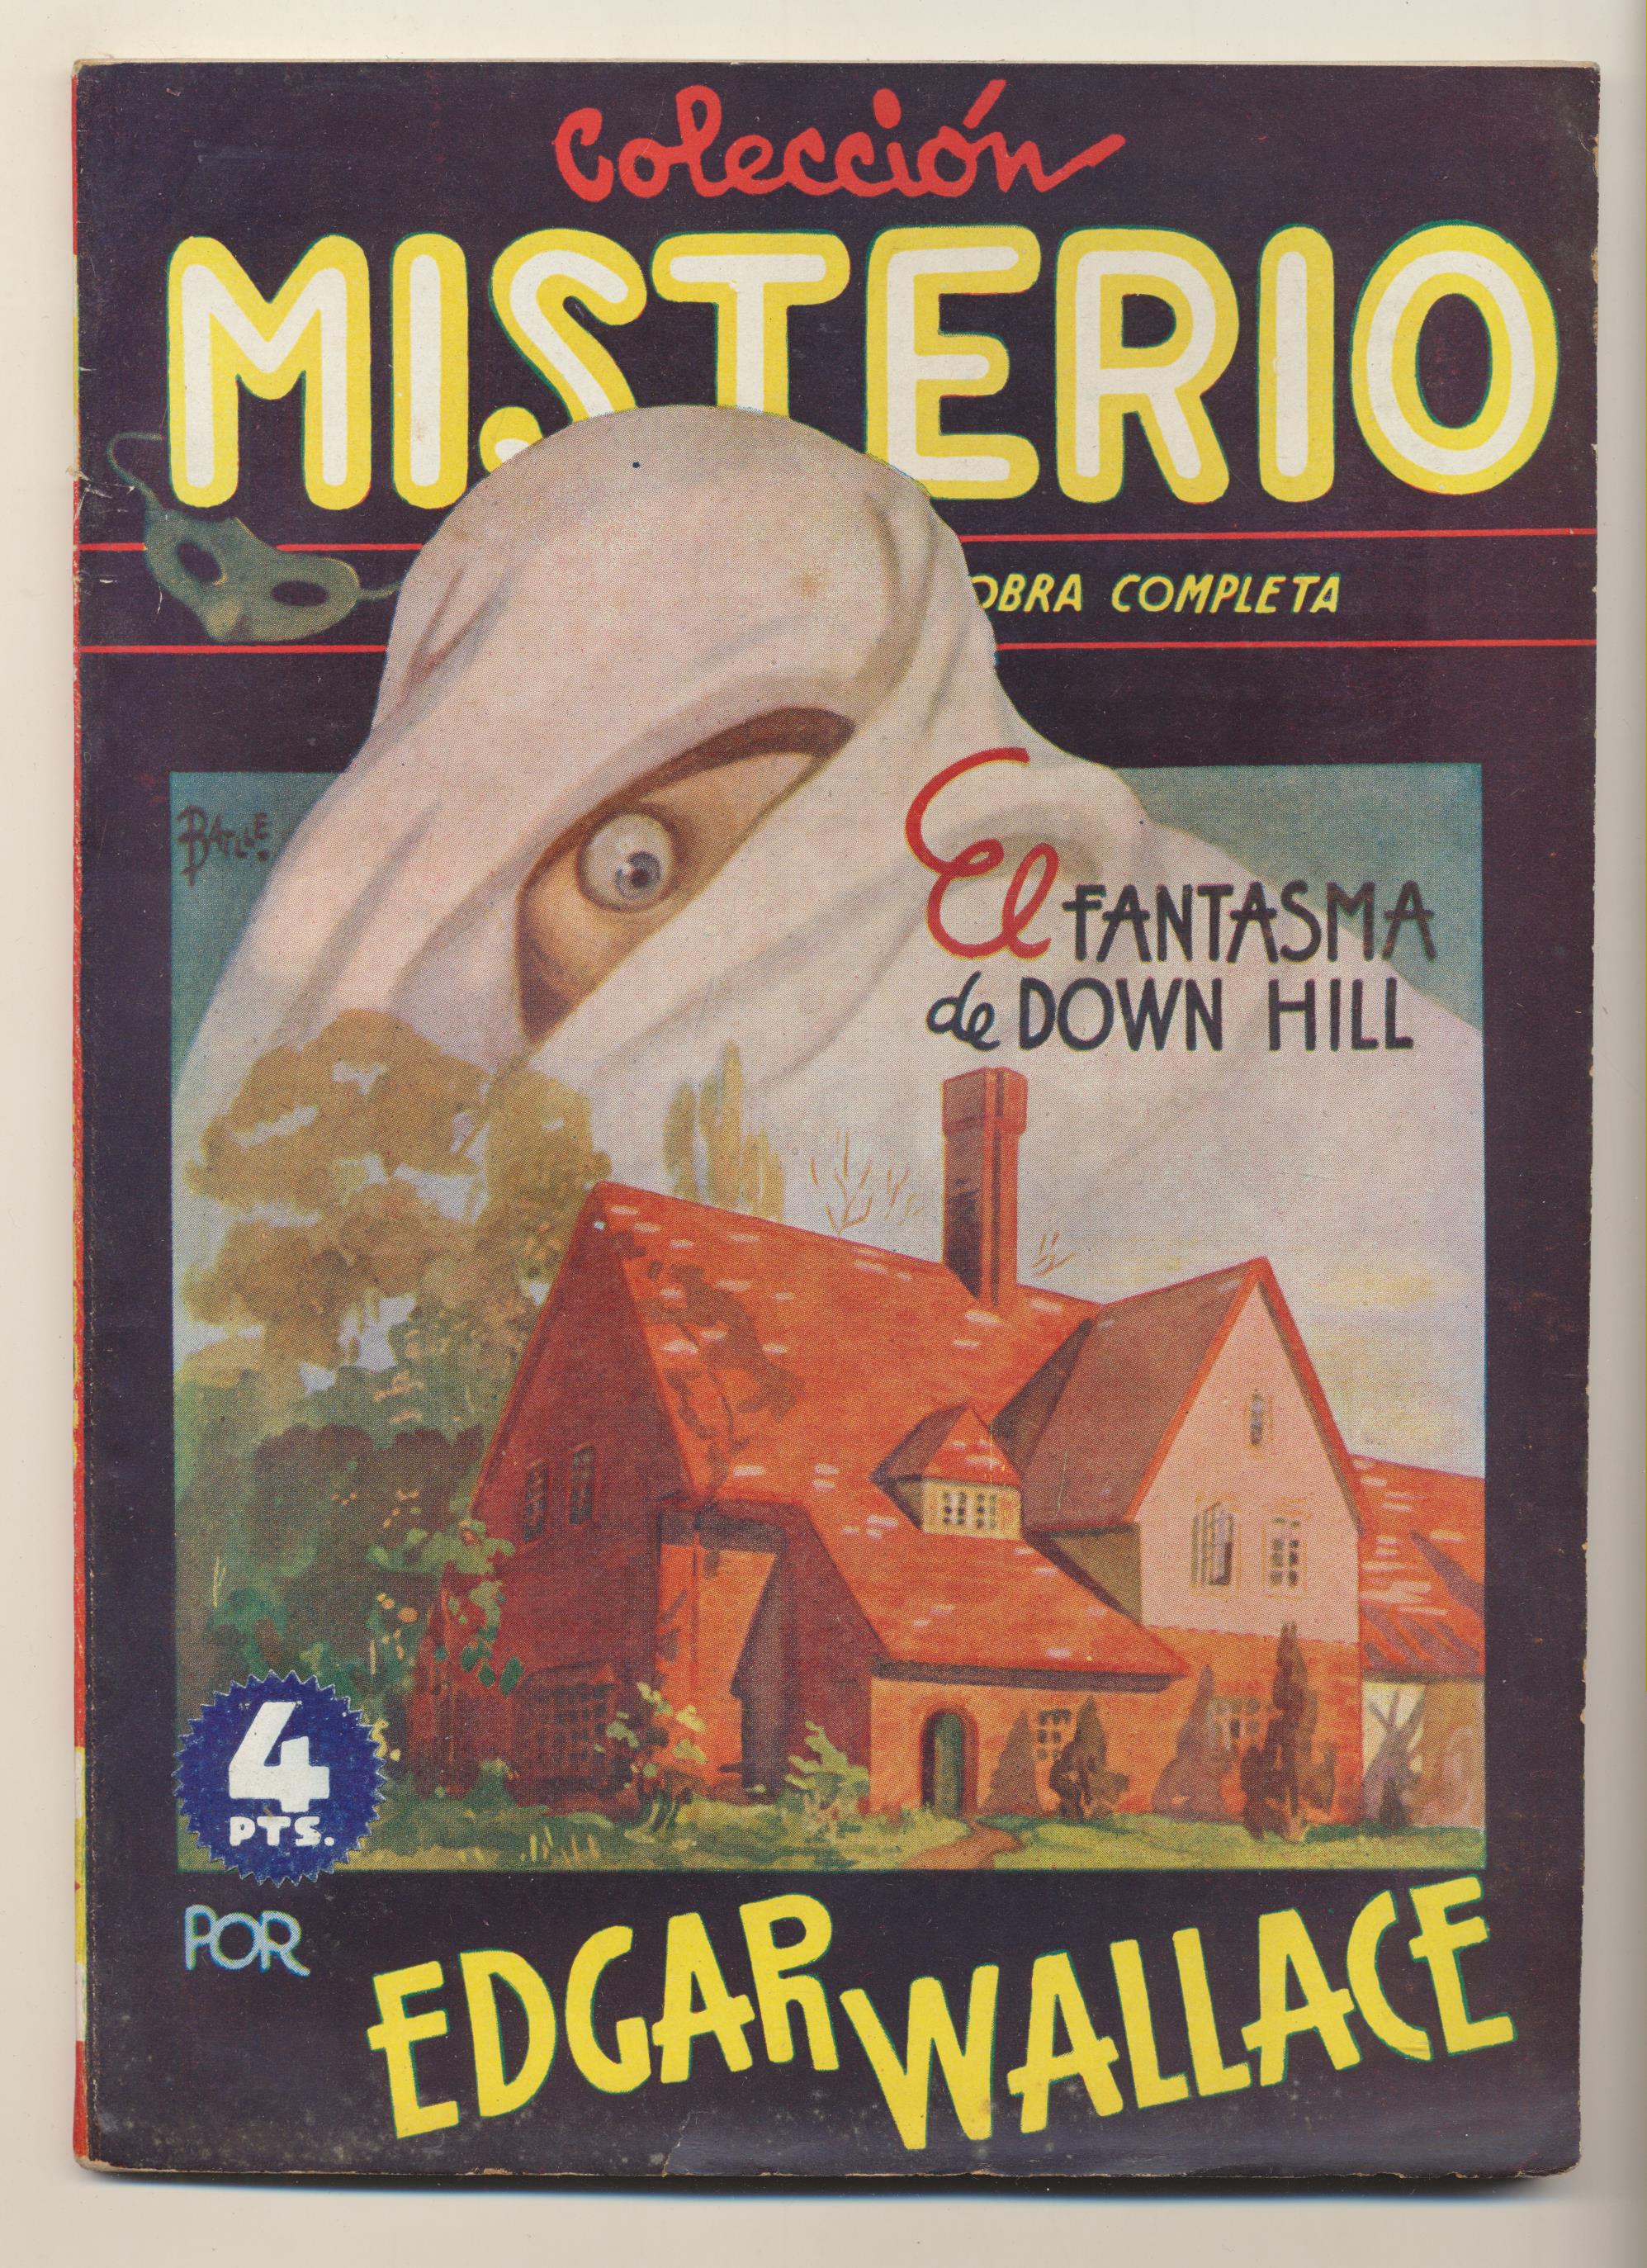 COlécción Misterio nº 21. El Fantasma de Down Hill por Edgar Wallace. Cliper 194?